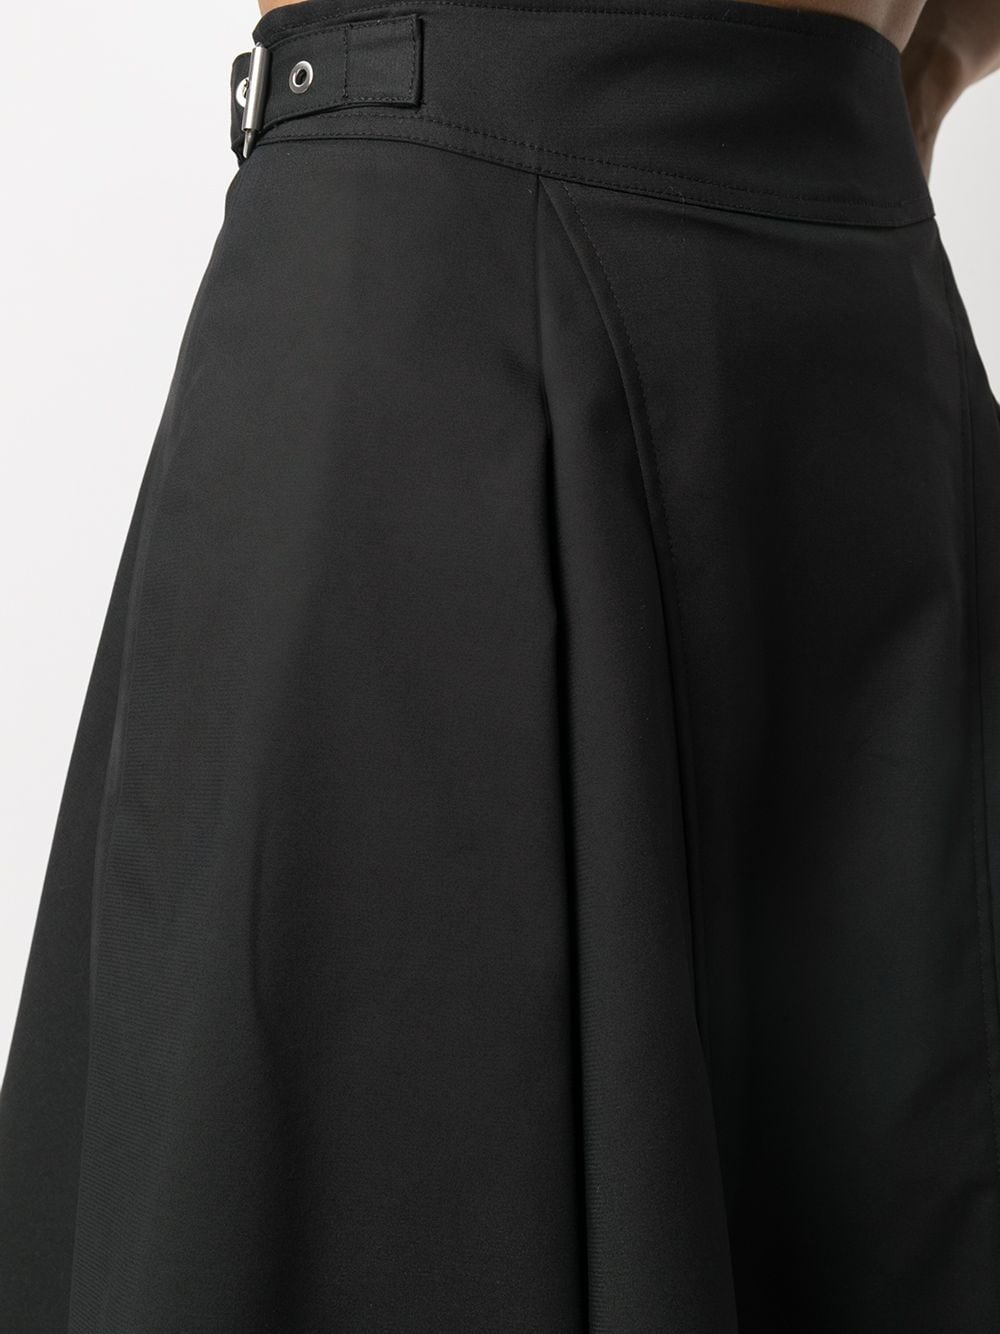 фото 3.1 phillip lim расклешенная юбка с завышенной талией